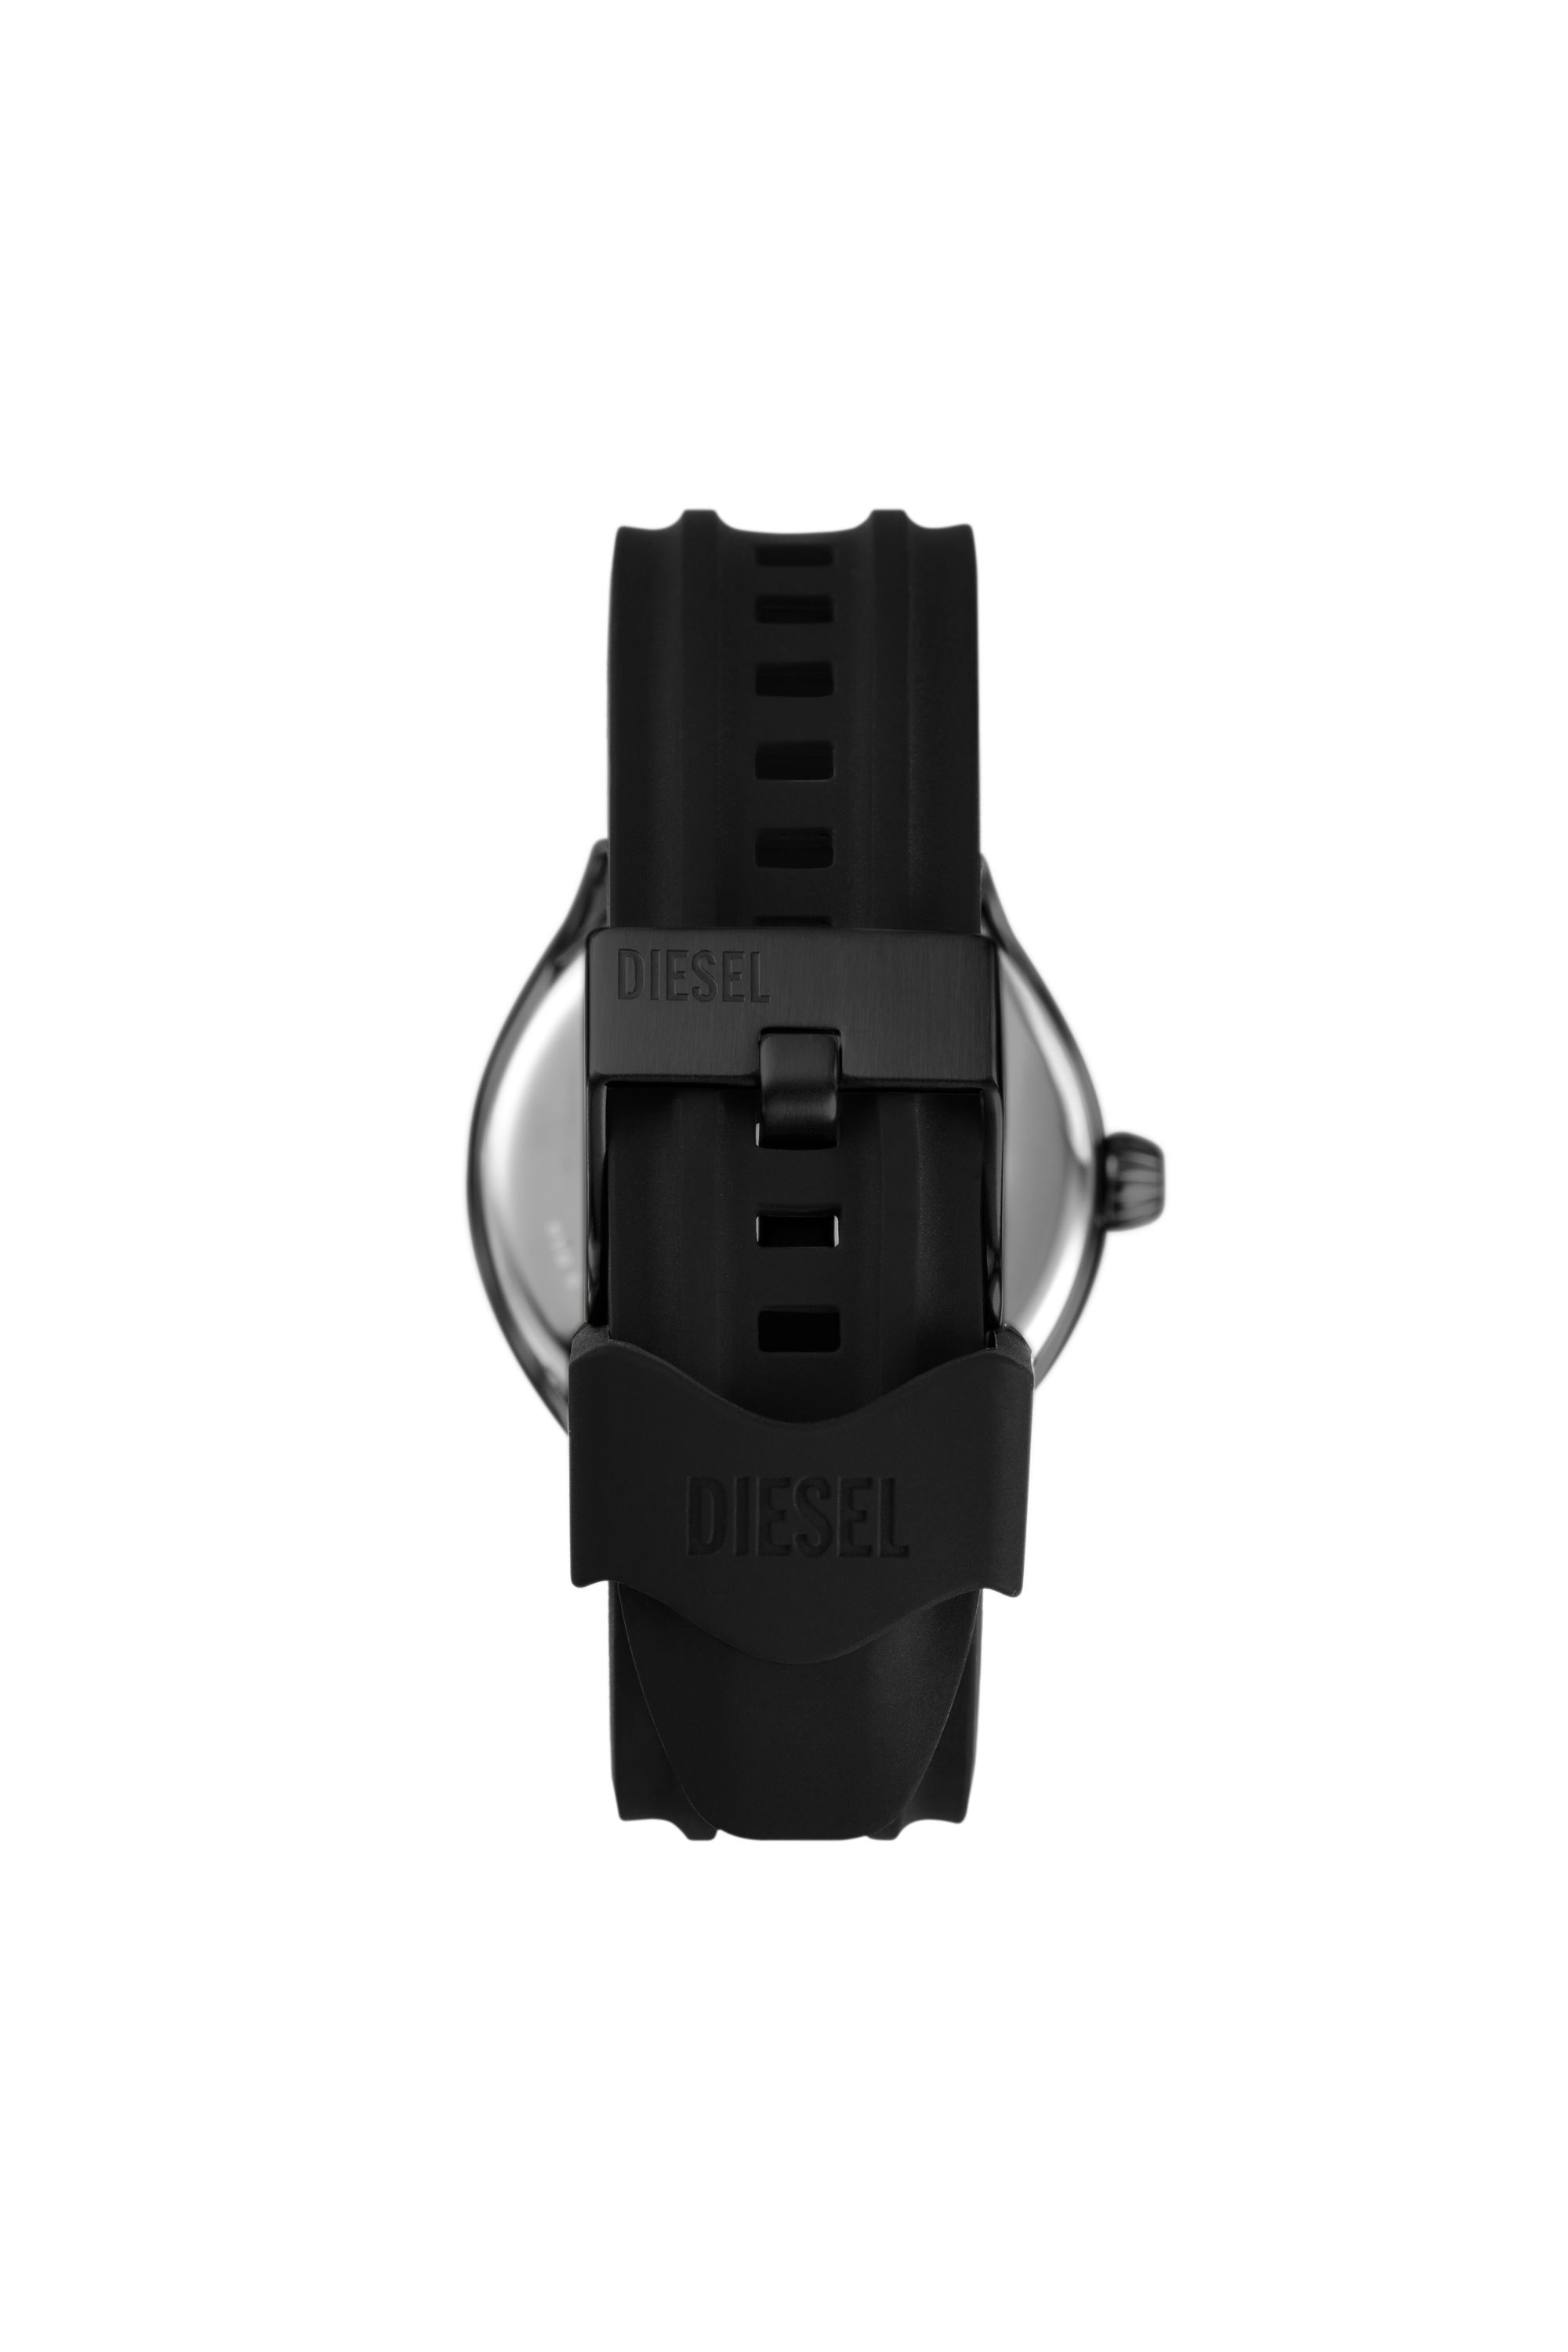 Diesel - DZ2203, Male Streamline three-hand black silicone watch in ブラック - Image 2